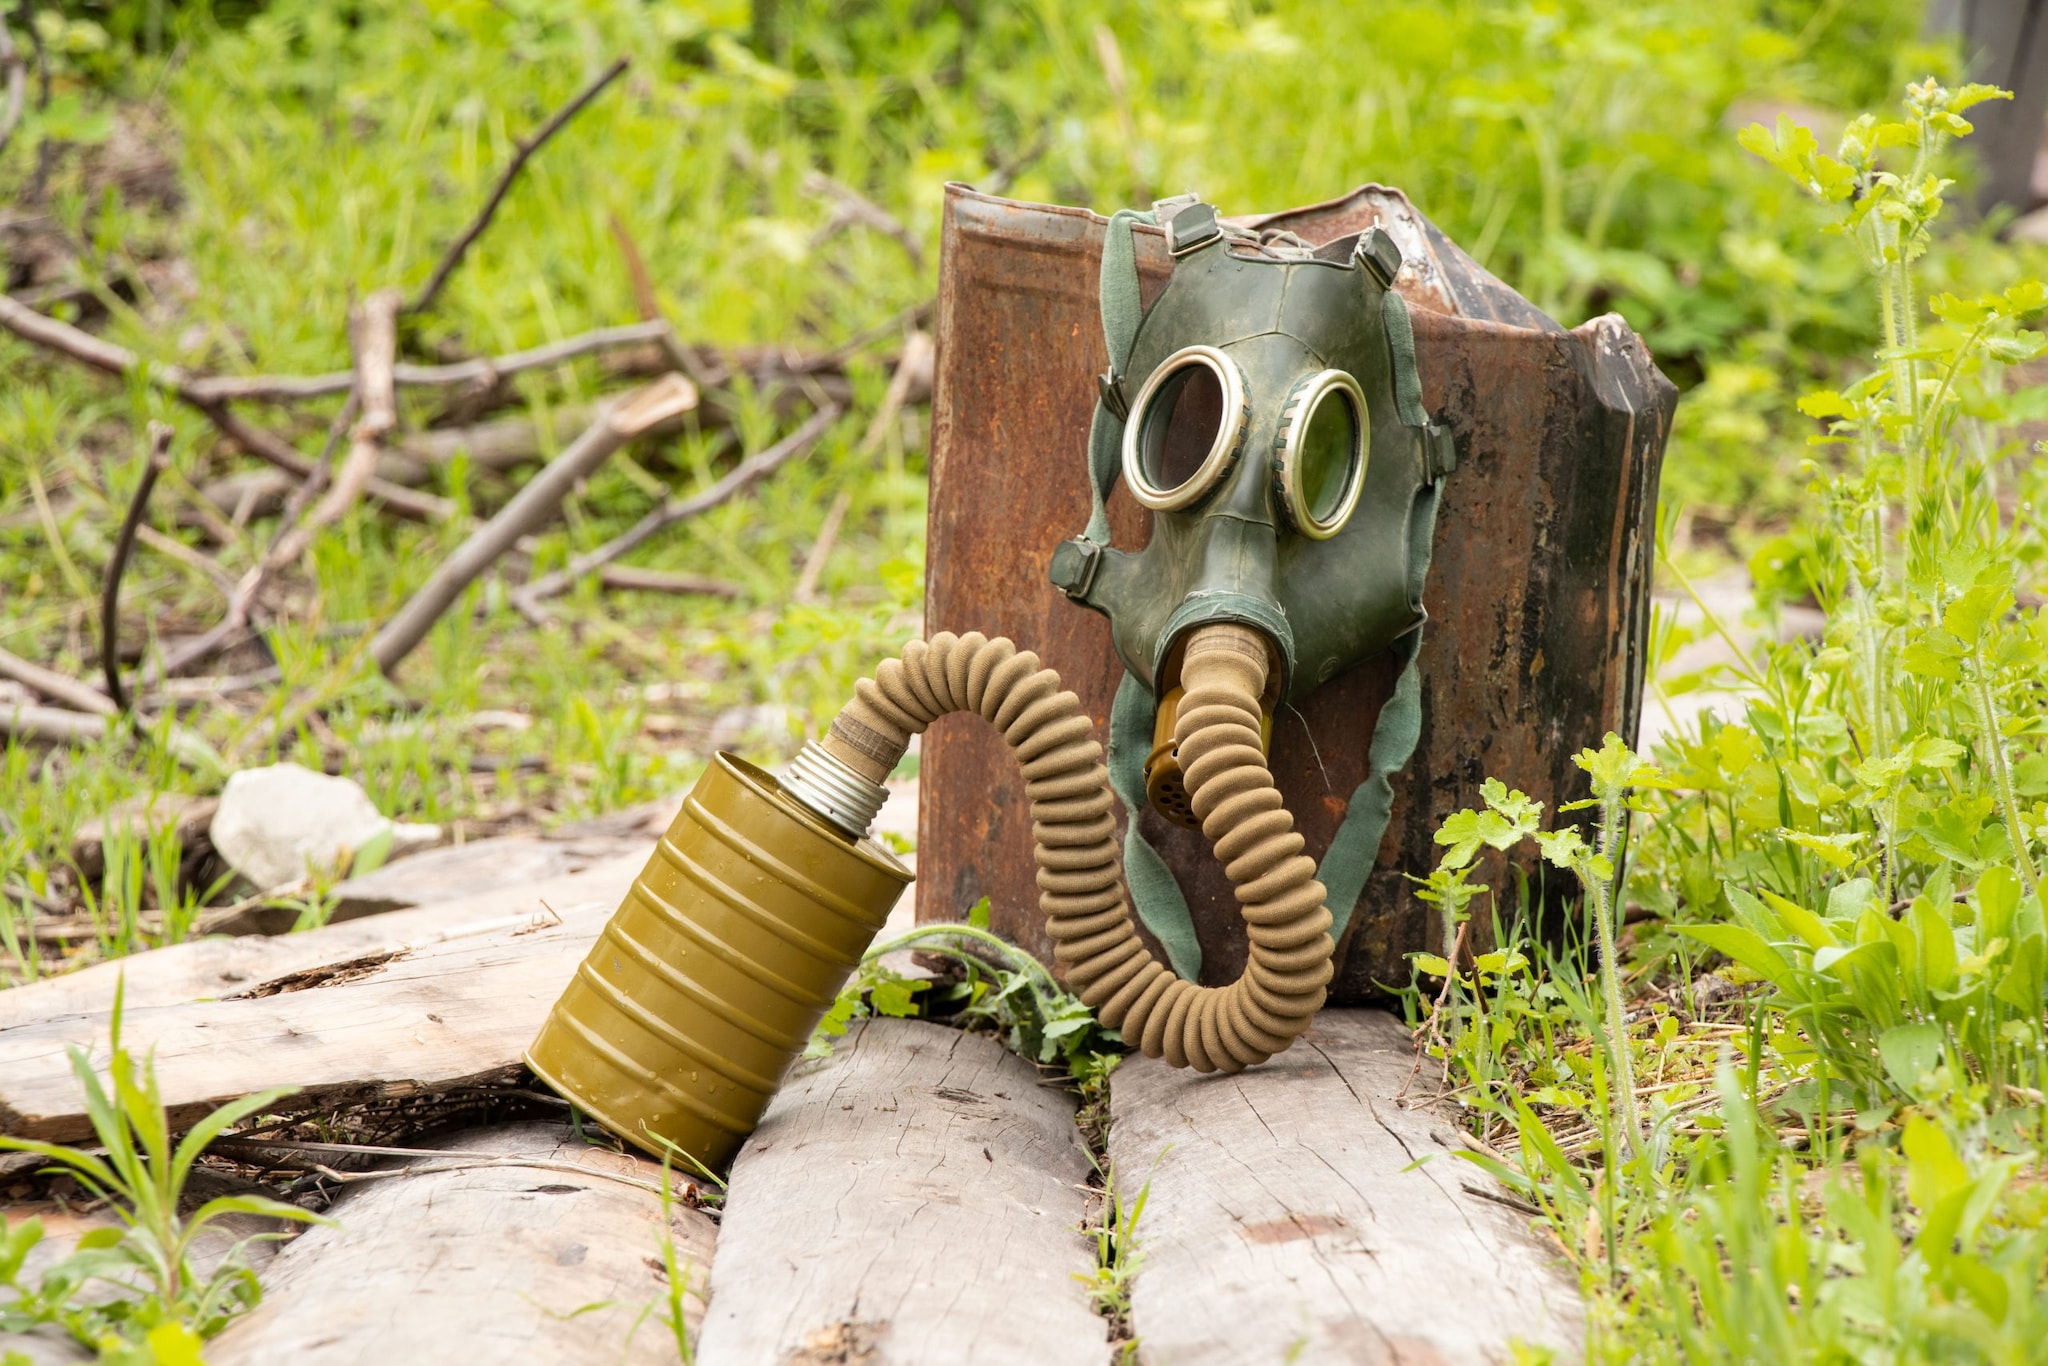 Decorative: Antique gas mask